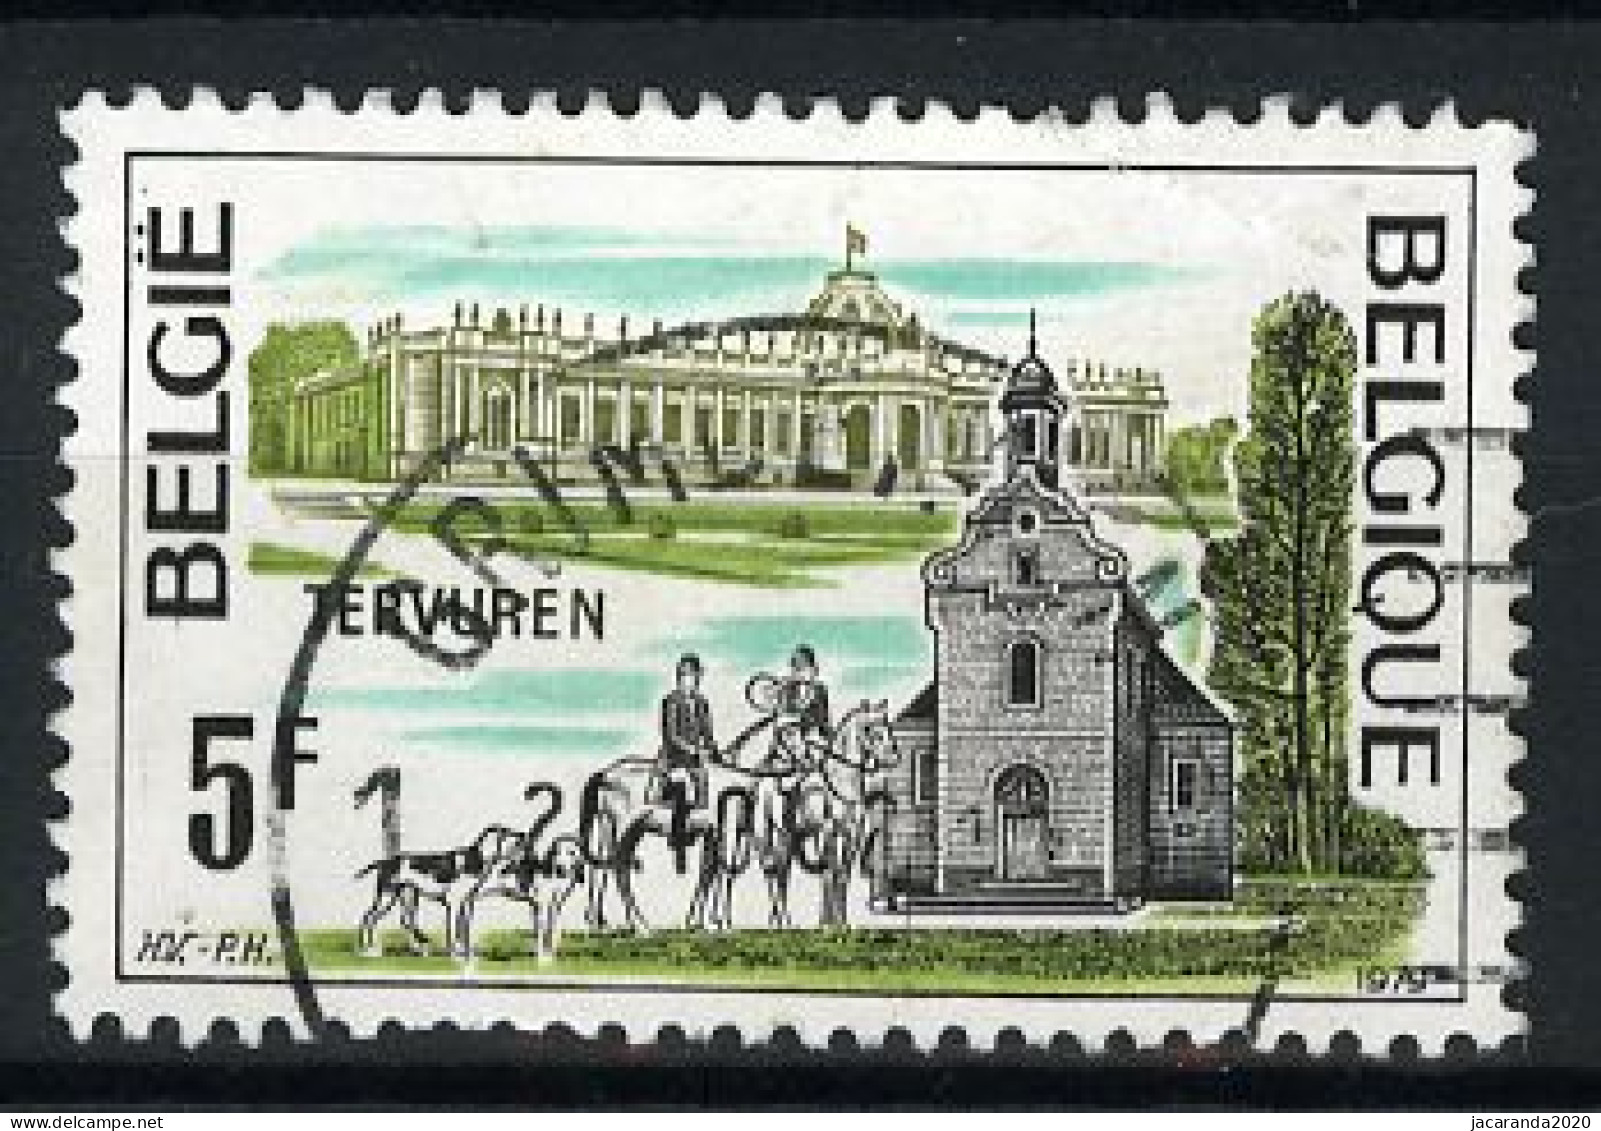 België 1947 - Tervuren - Gestempeld - Oblitéré -used - Gebruikt